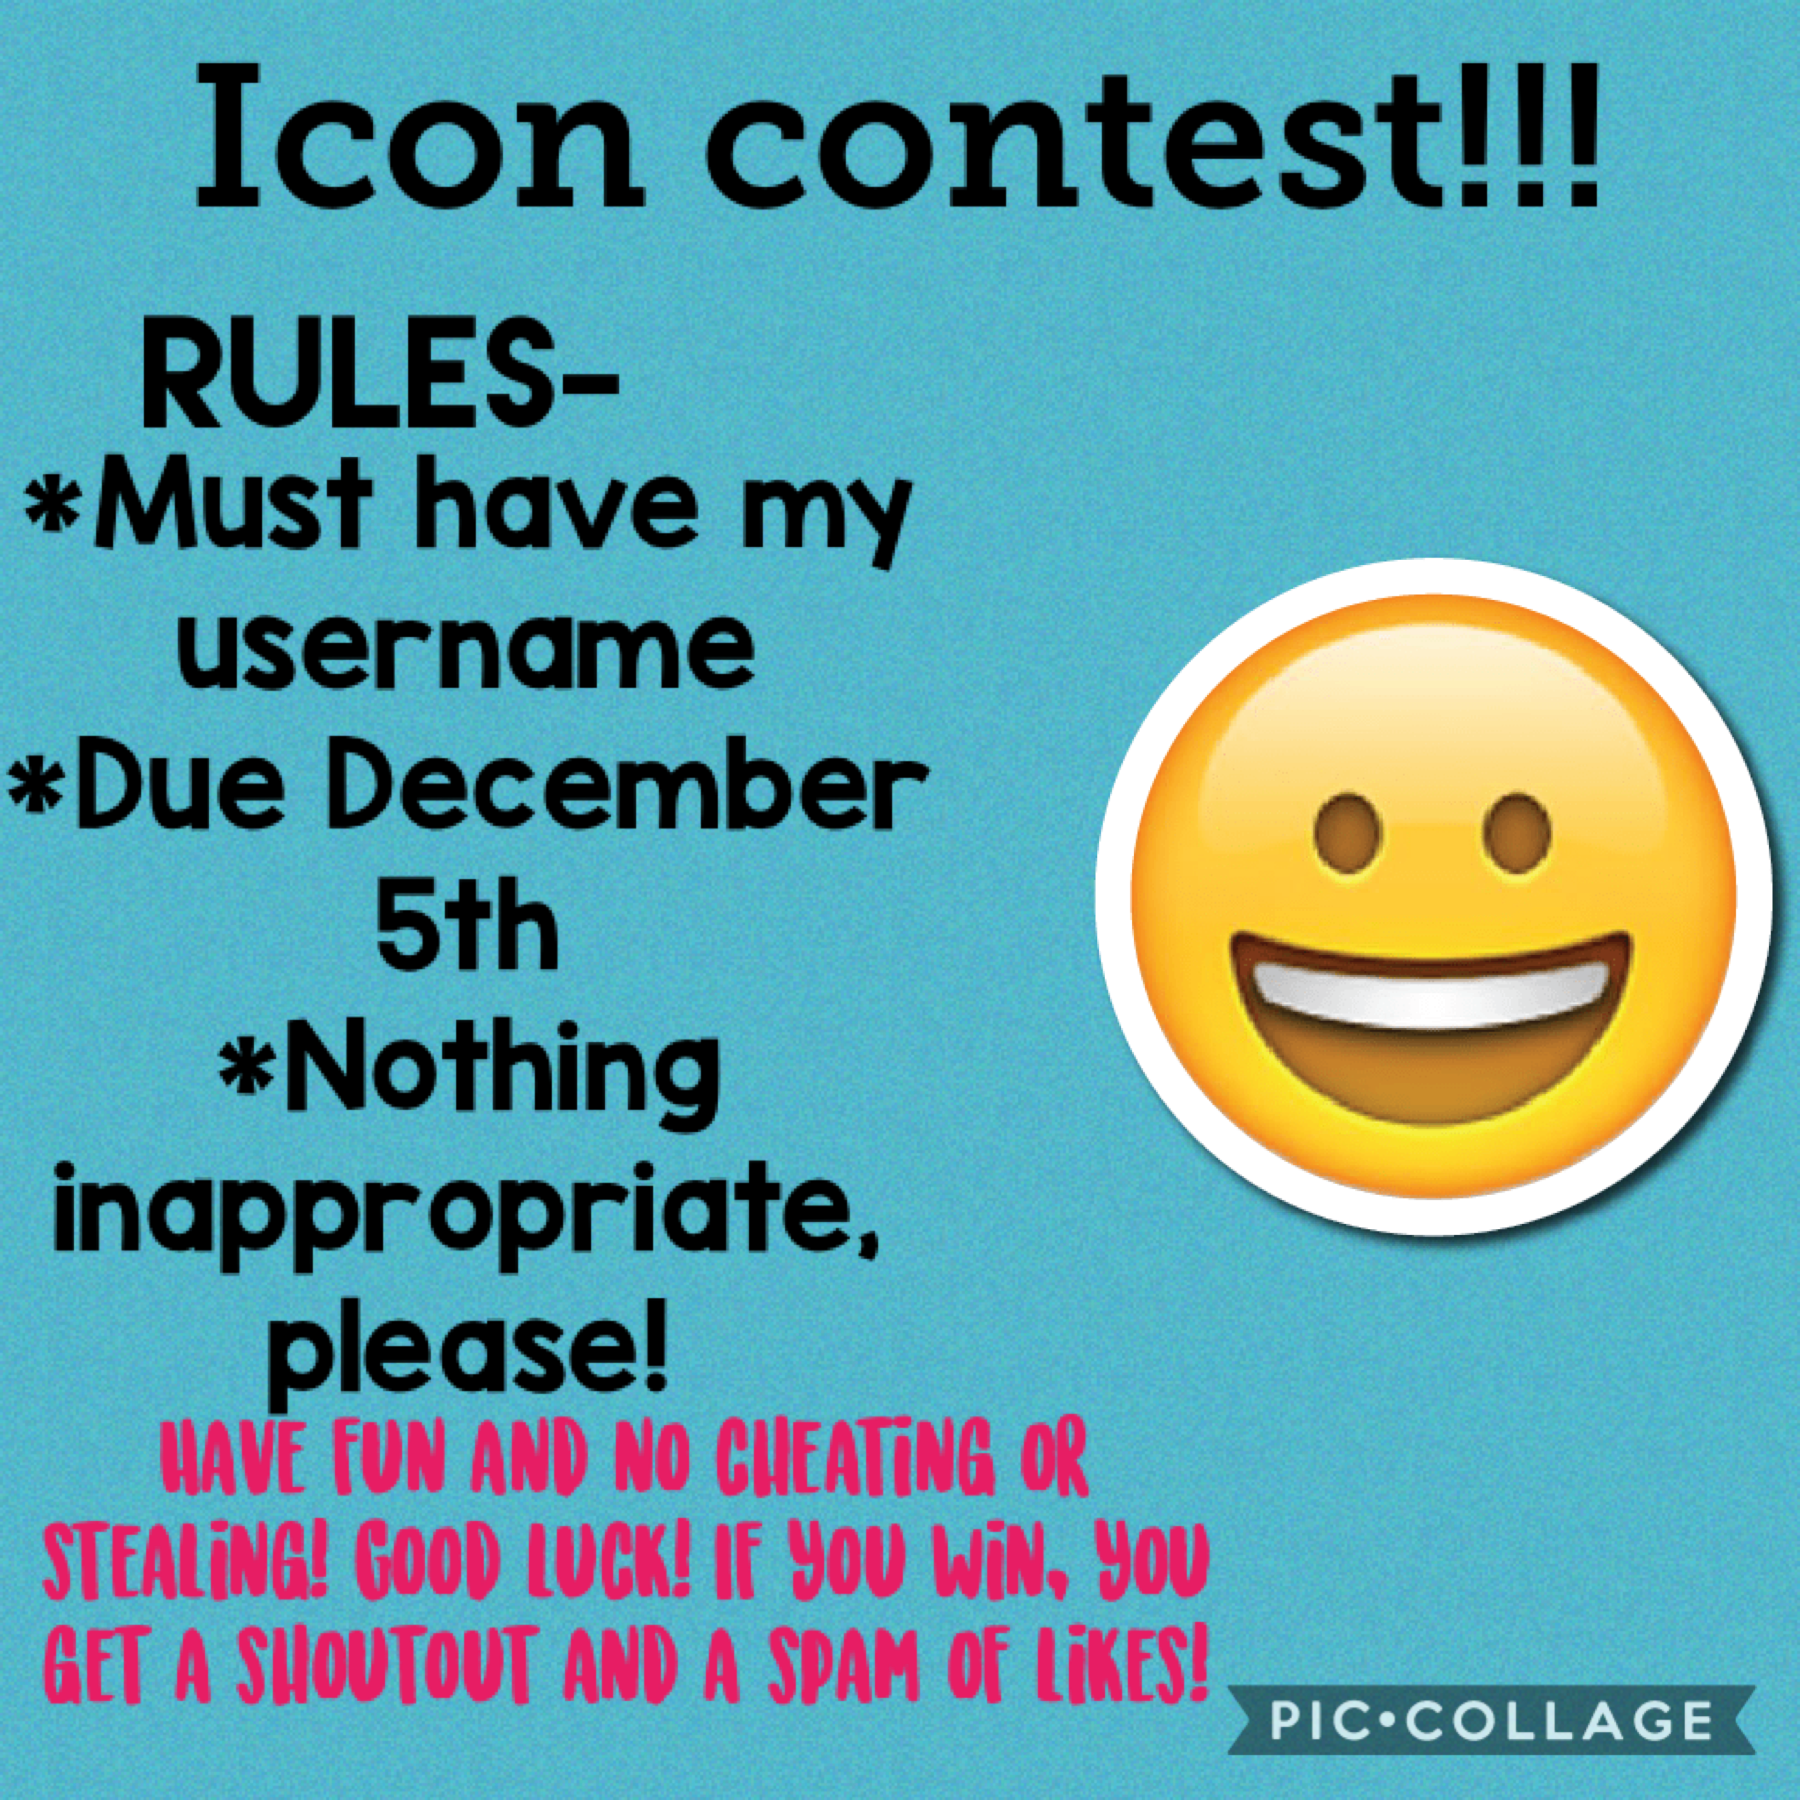 Contest!! Please enter!! 😀